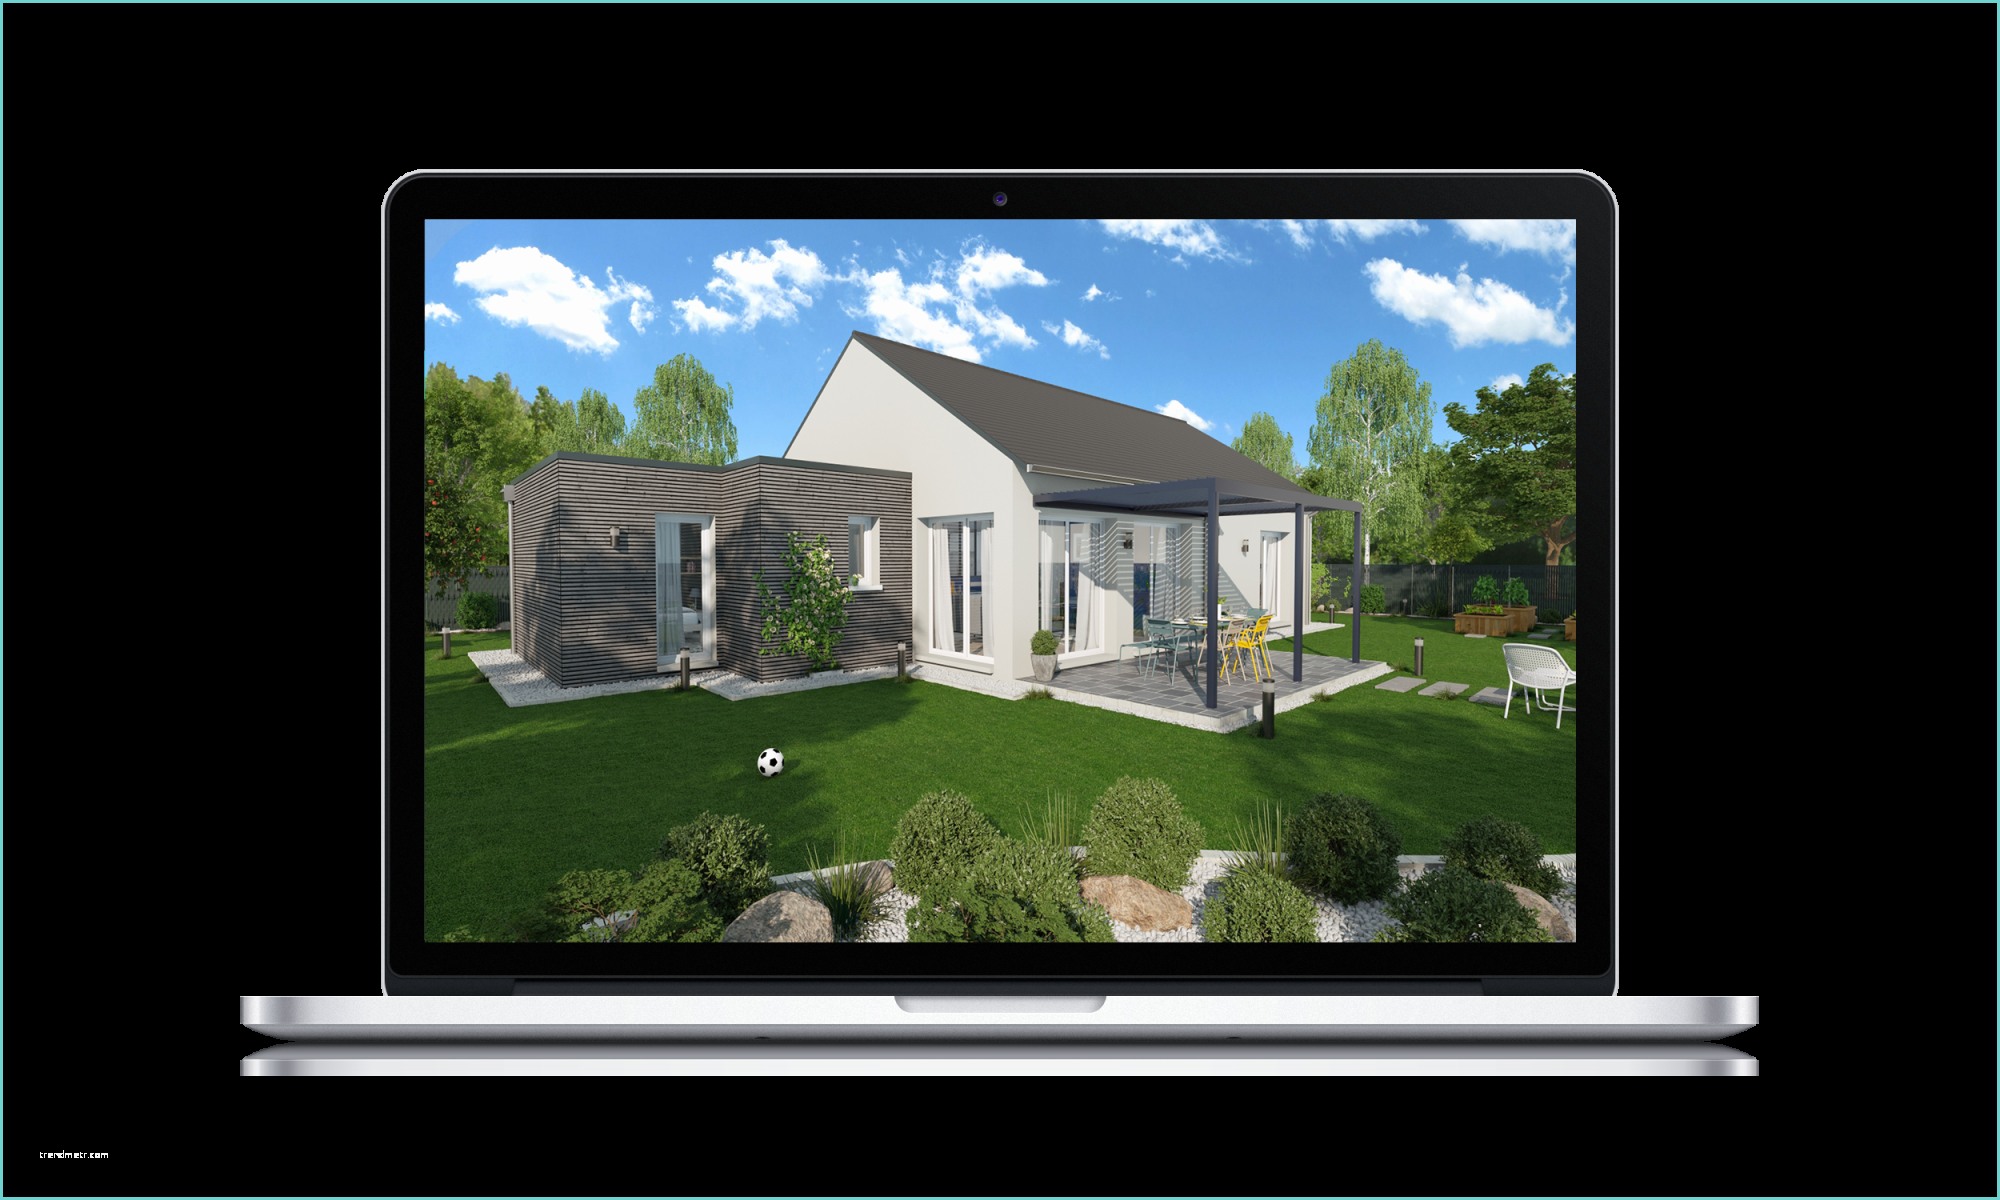 Cedreo Home Planner Crack Logiciel D Architecture 3d Professionnel Pour La